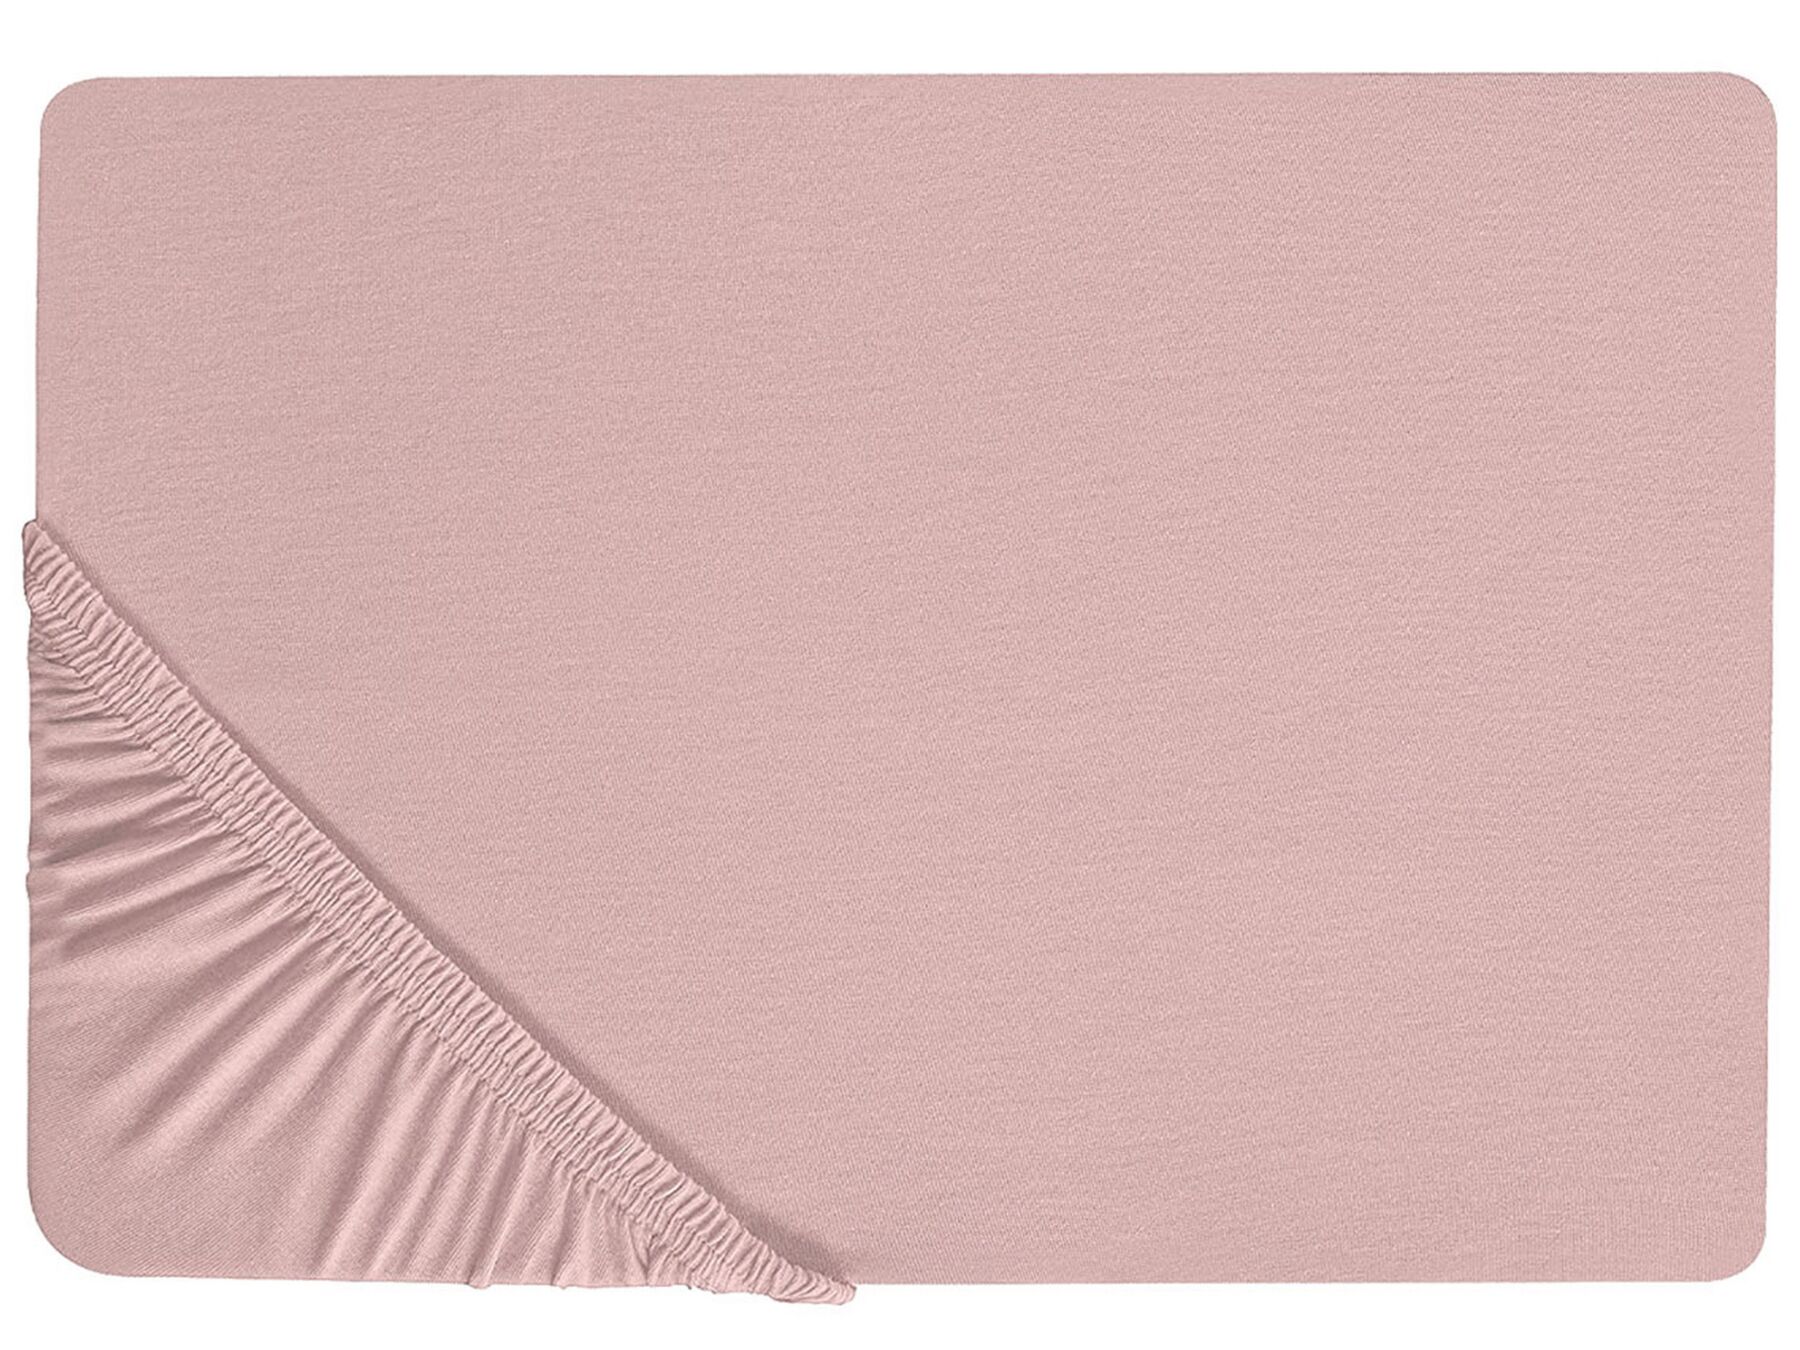 Rózsaszín pamut gumis lepedő 160 x 200 cm HOFUF_815909